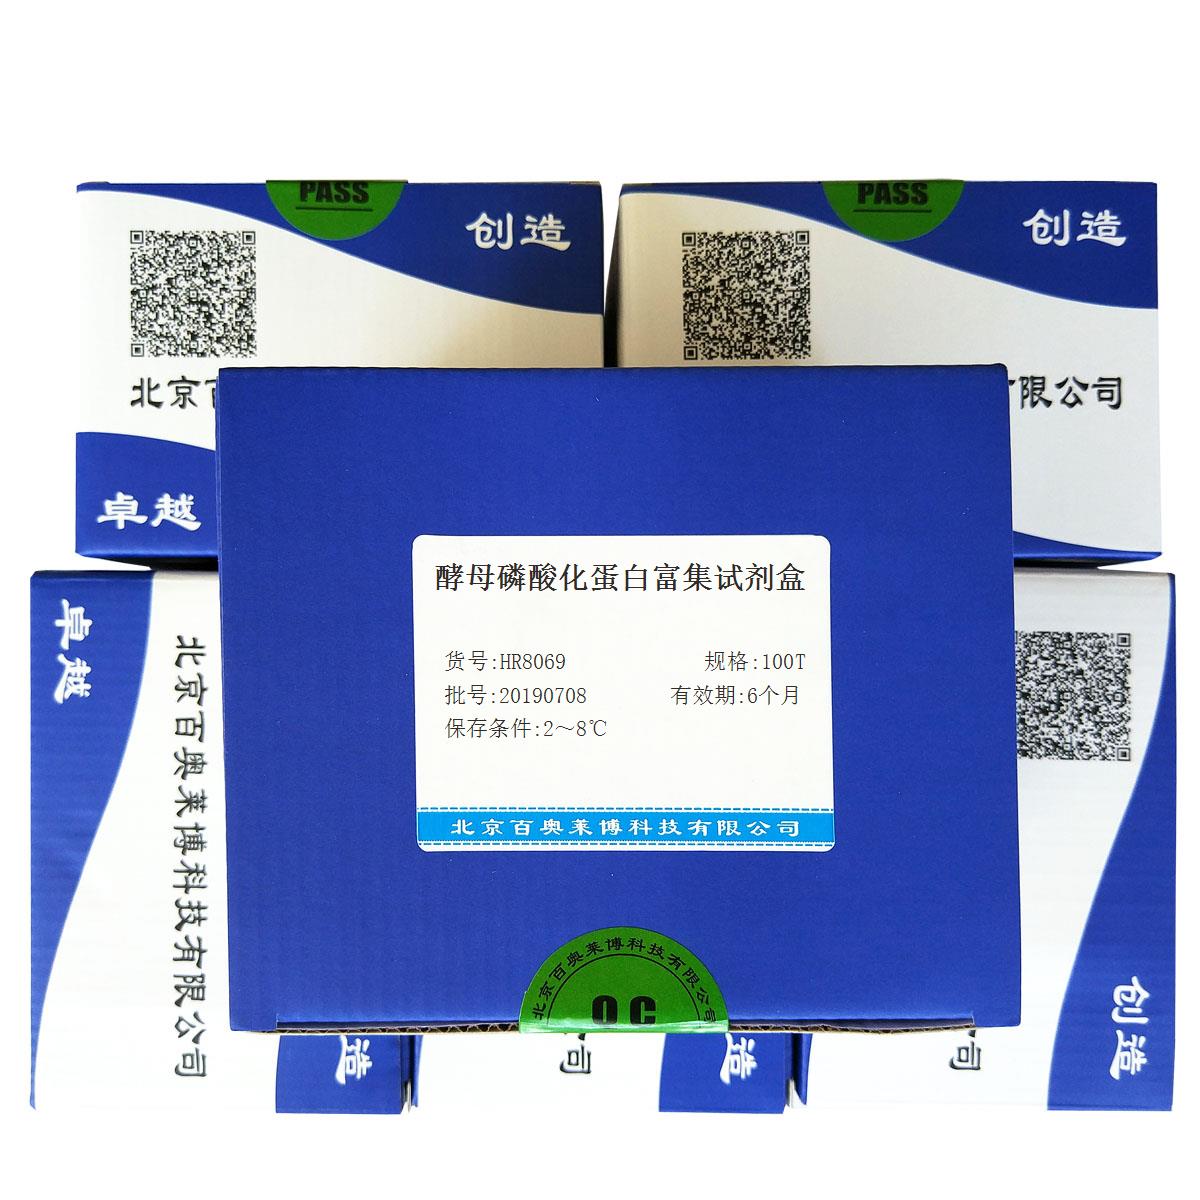 酵母磷酸化蛋白富集试剂盒北京厂家